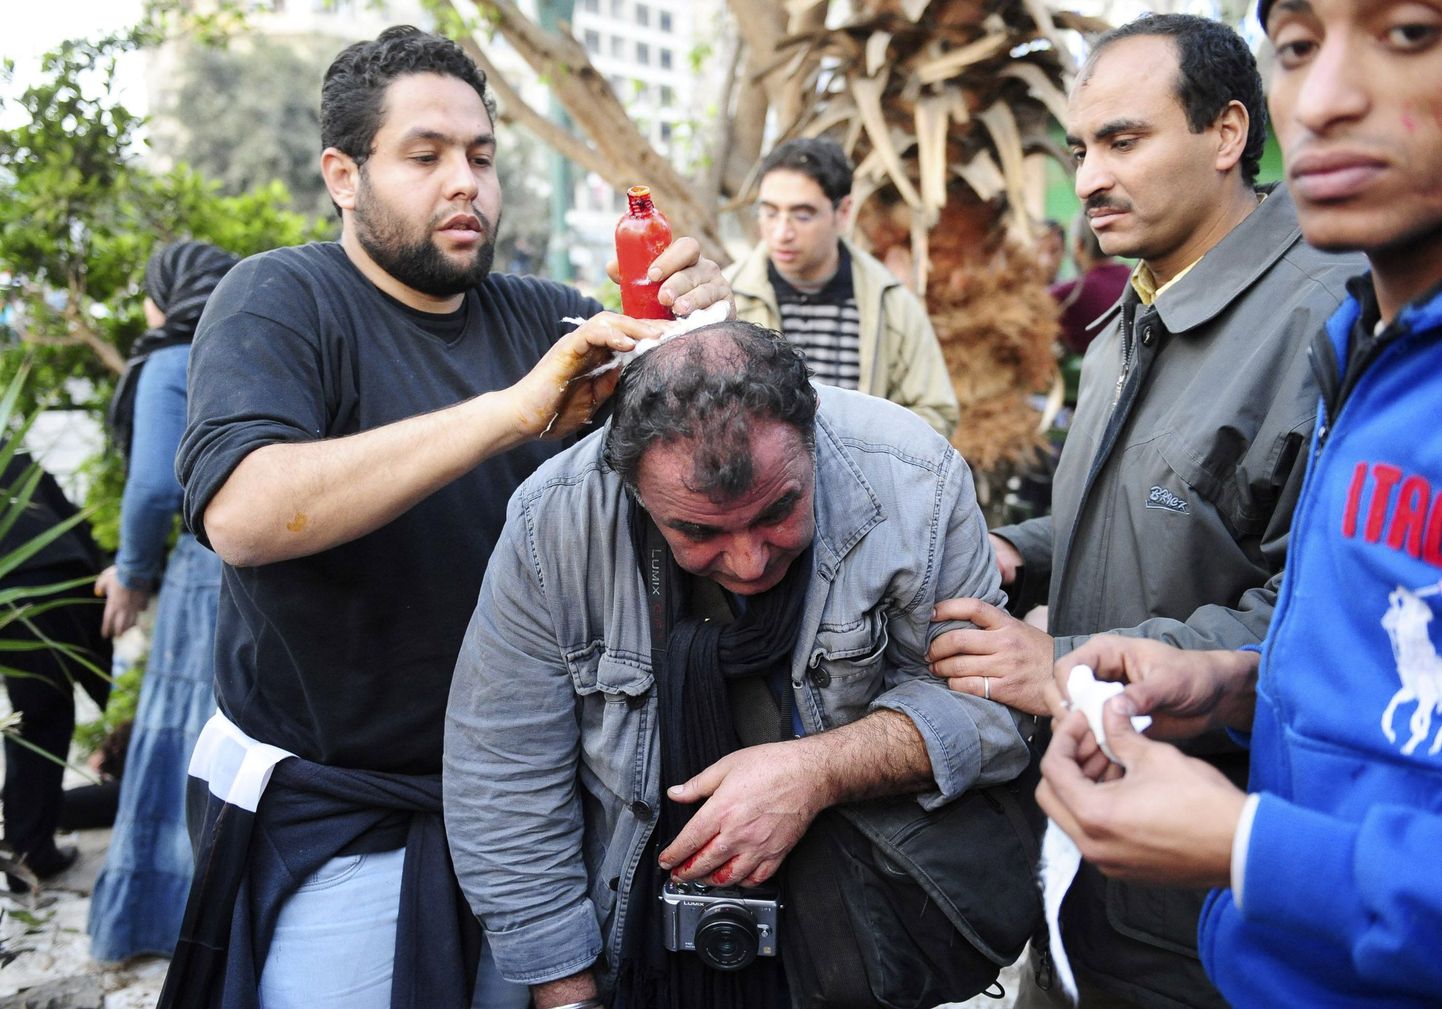 Egiptlased aitamas viga saanud Prantsuse fotograafi SIPA agentuurist.